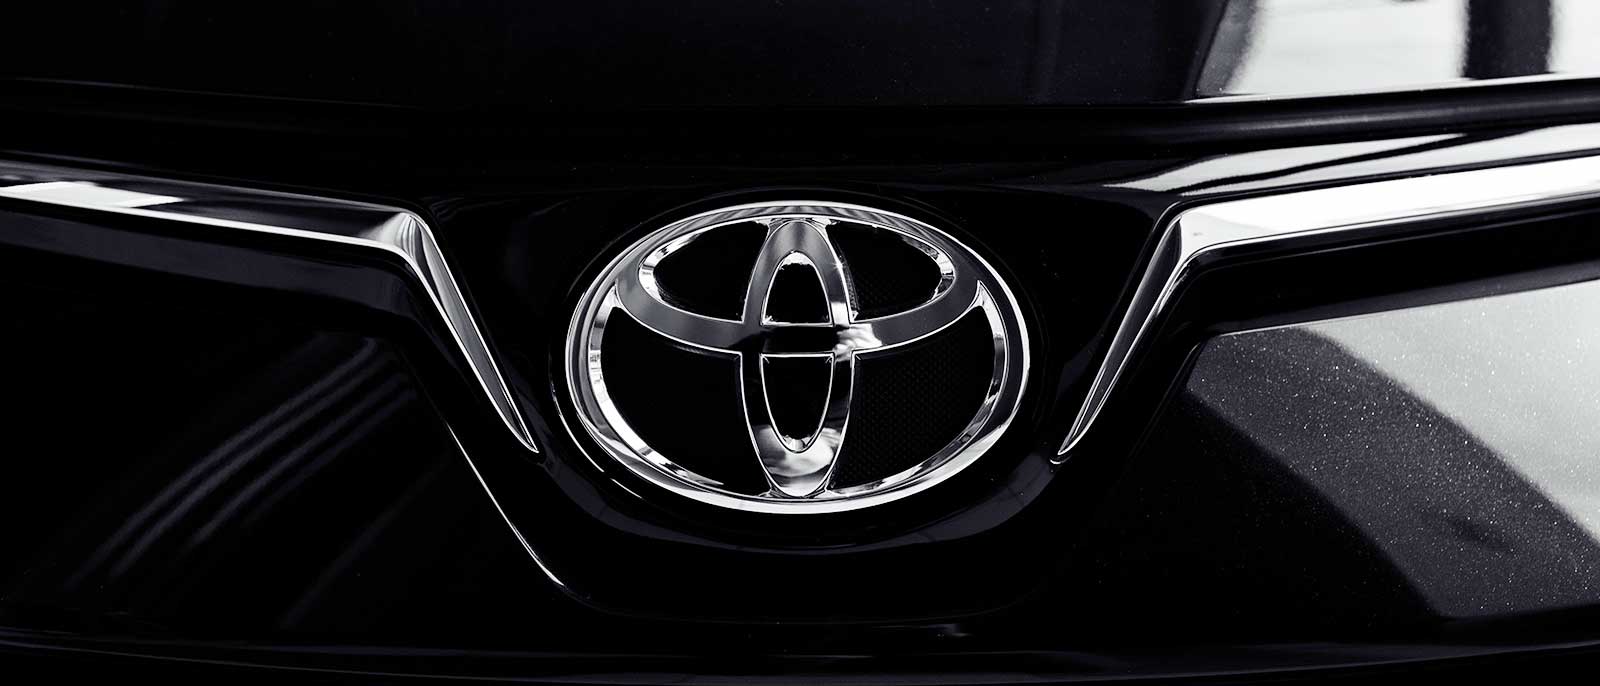 Toyota największym koncernem motoryzacyjnym świata – nowy ranking Fortune Global 500